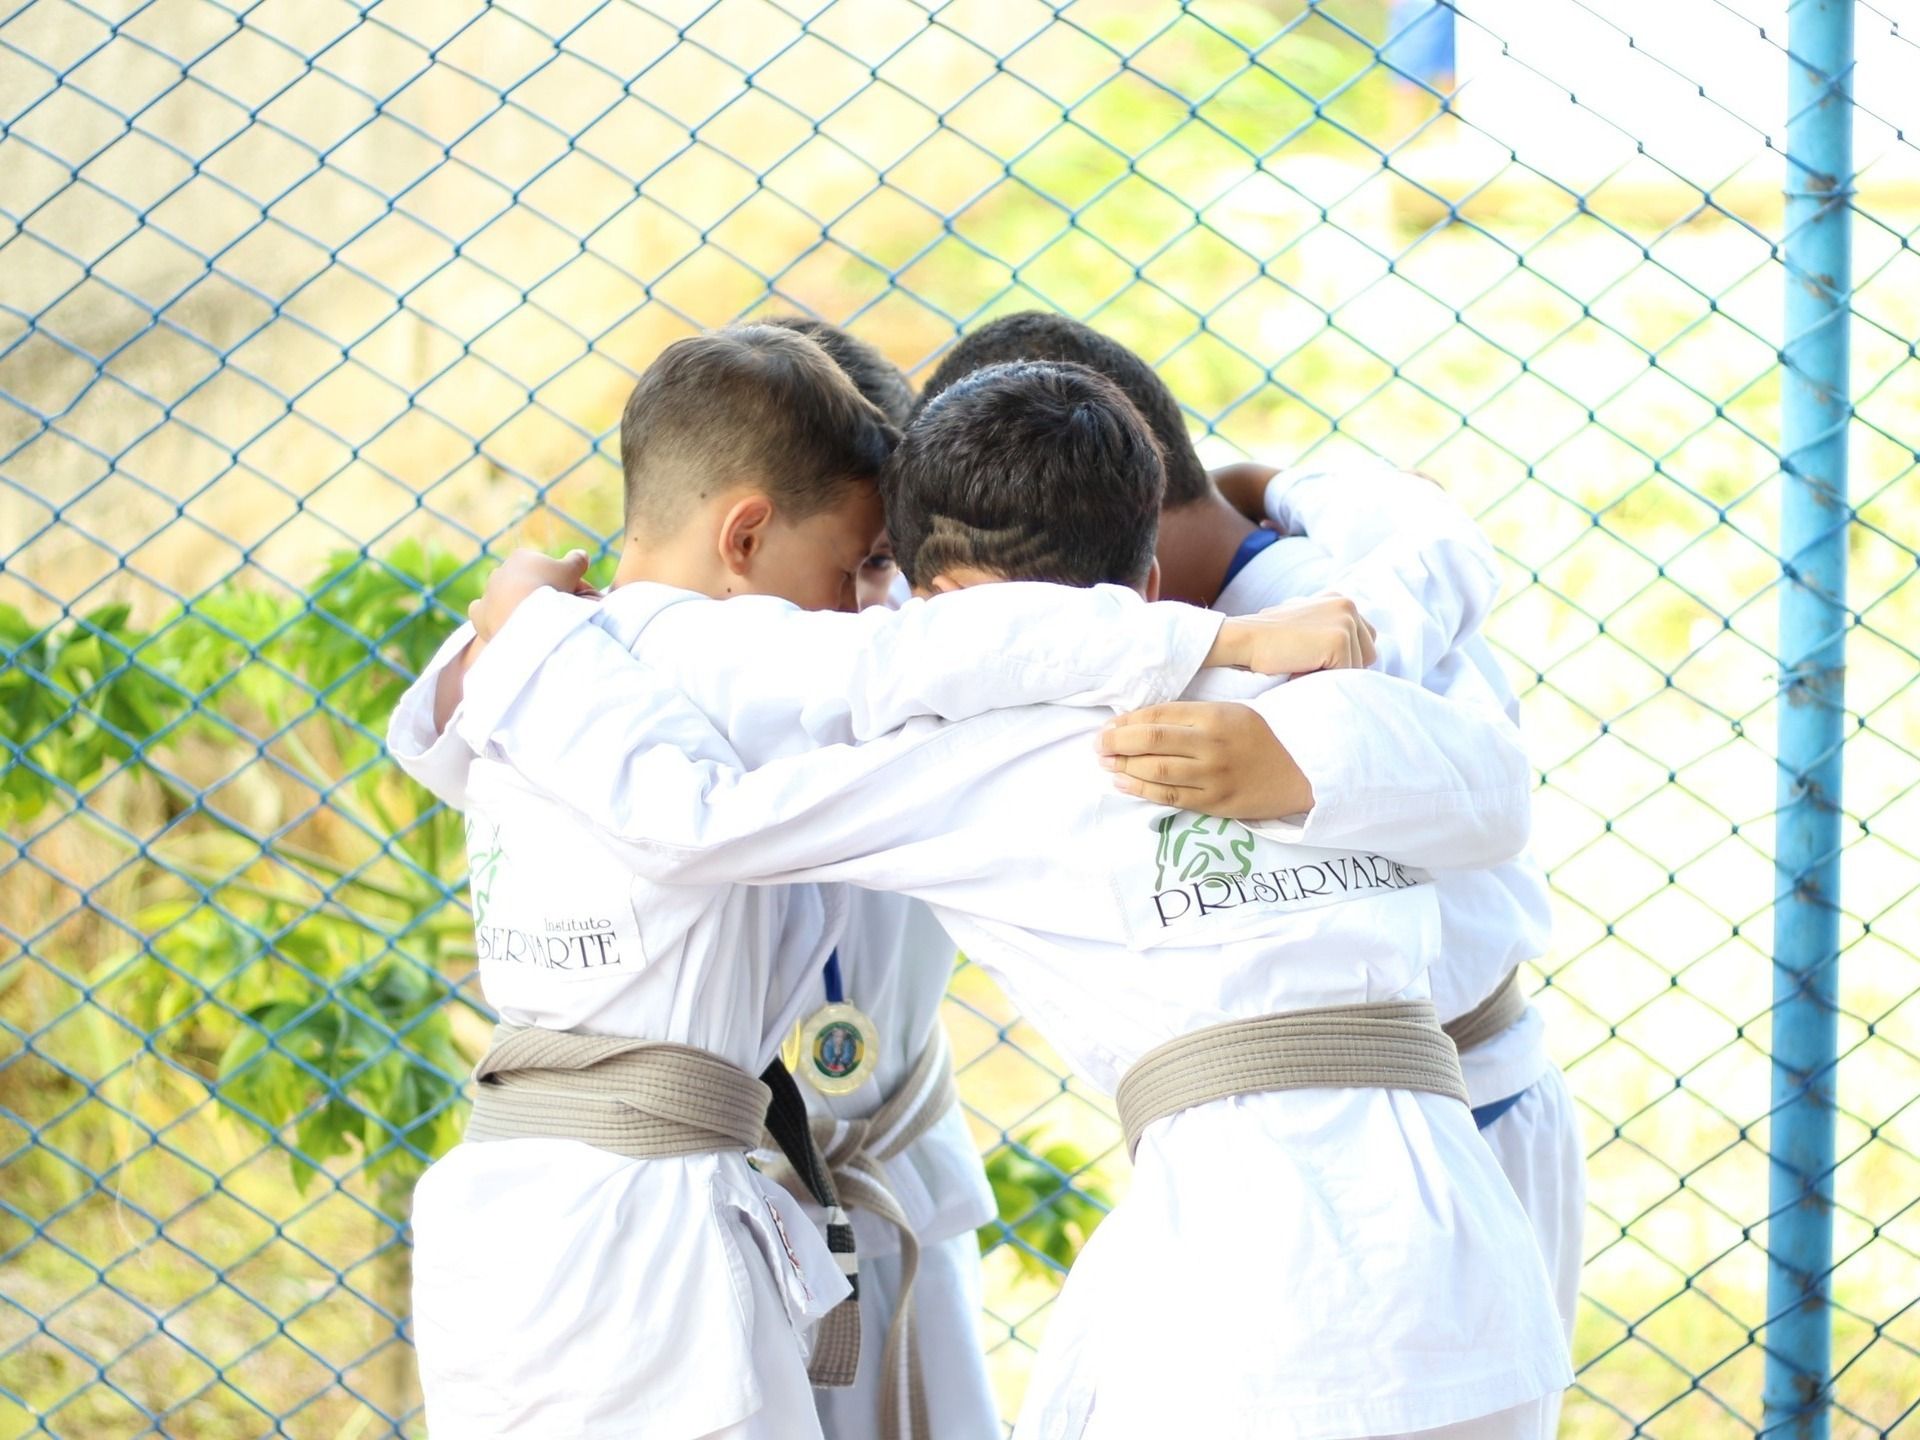 Imagem de 4 crianças aparentandoi ter 6 a 8 anos, abraçadas em círculo vestindo os quimonos brancos de jiu-jitsu do instituto preservarte em clima de concentração em um campeonato de Jiu-jitsu.